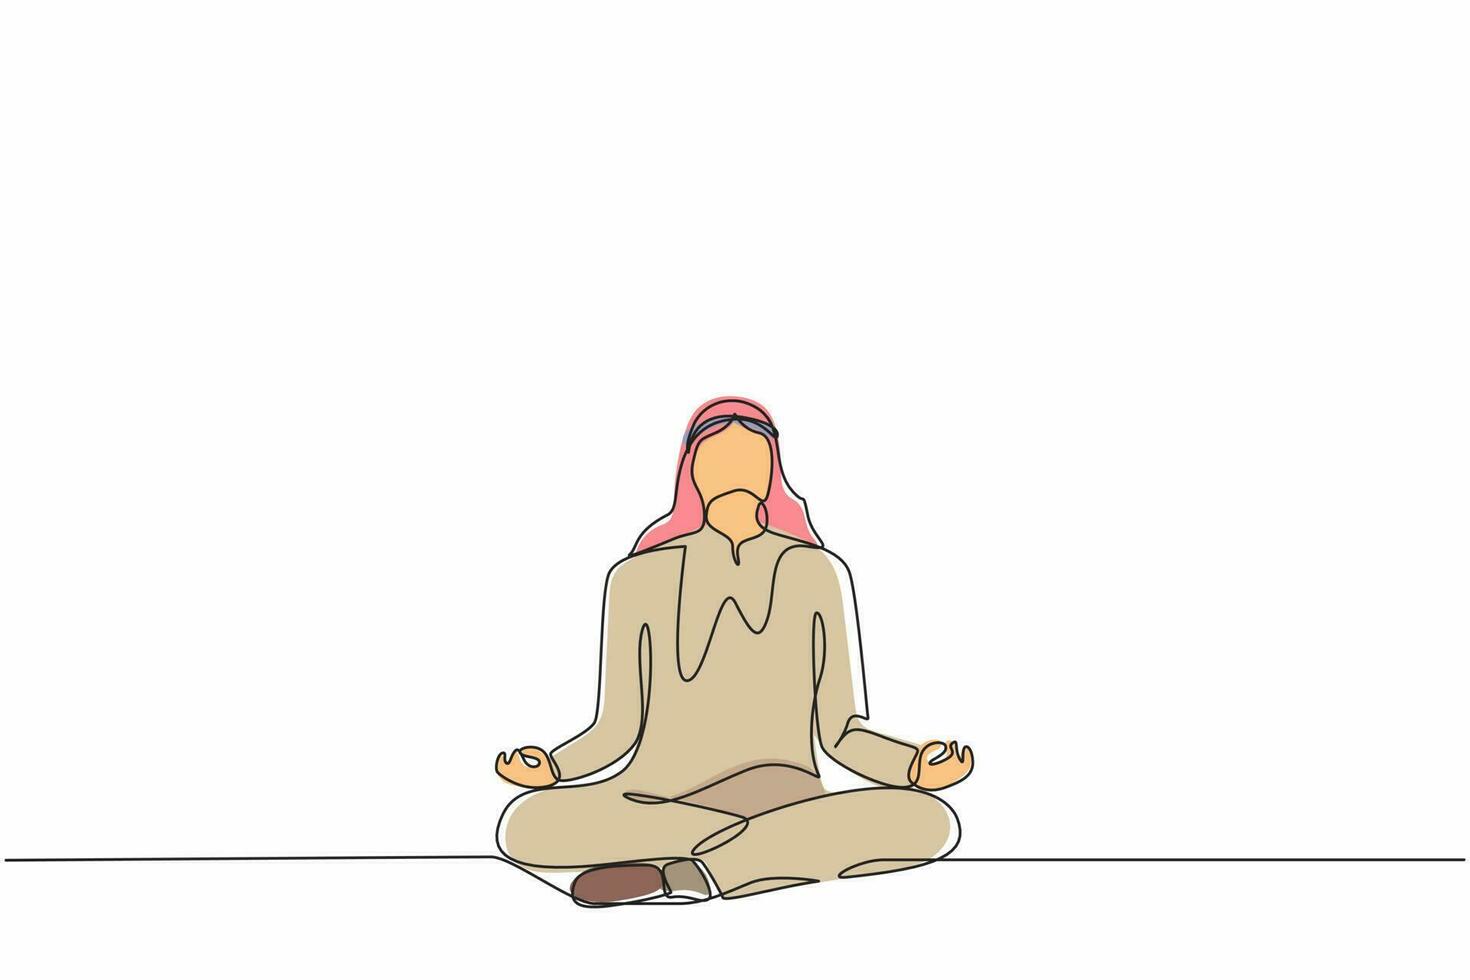 unico disegno a linea continua uomo d'affari arabo che fa yoga. impiegato seduto in posa yoga, meditazione, relax, calma e gestione dello stress. illustrazione vettoriale di un disegno grafico a una linea